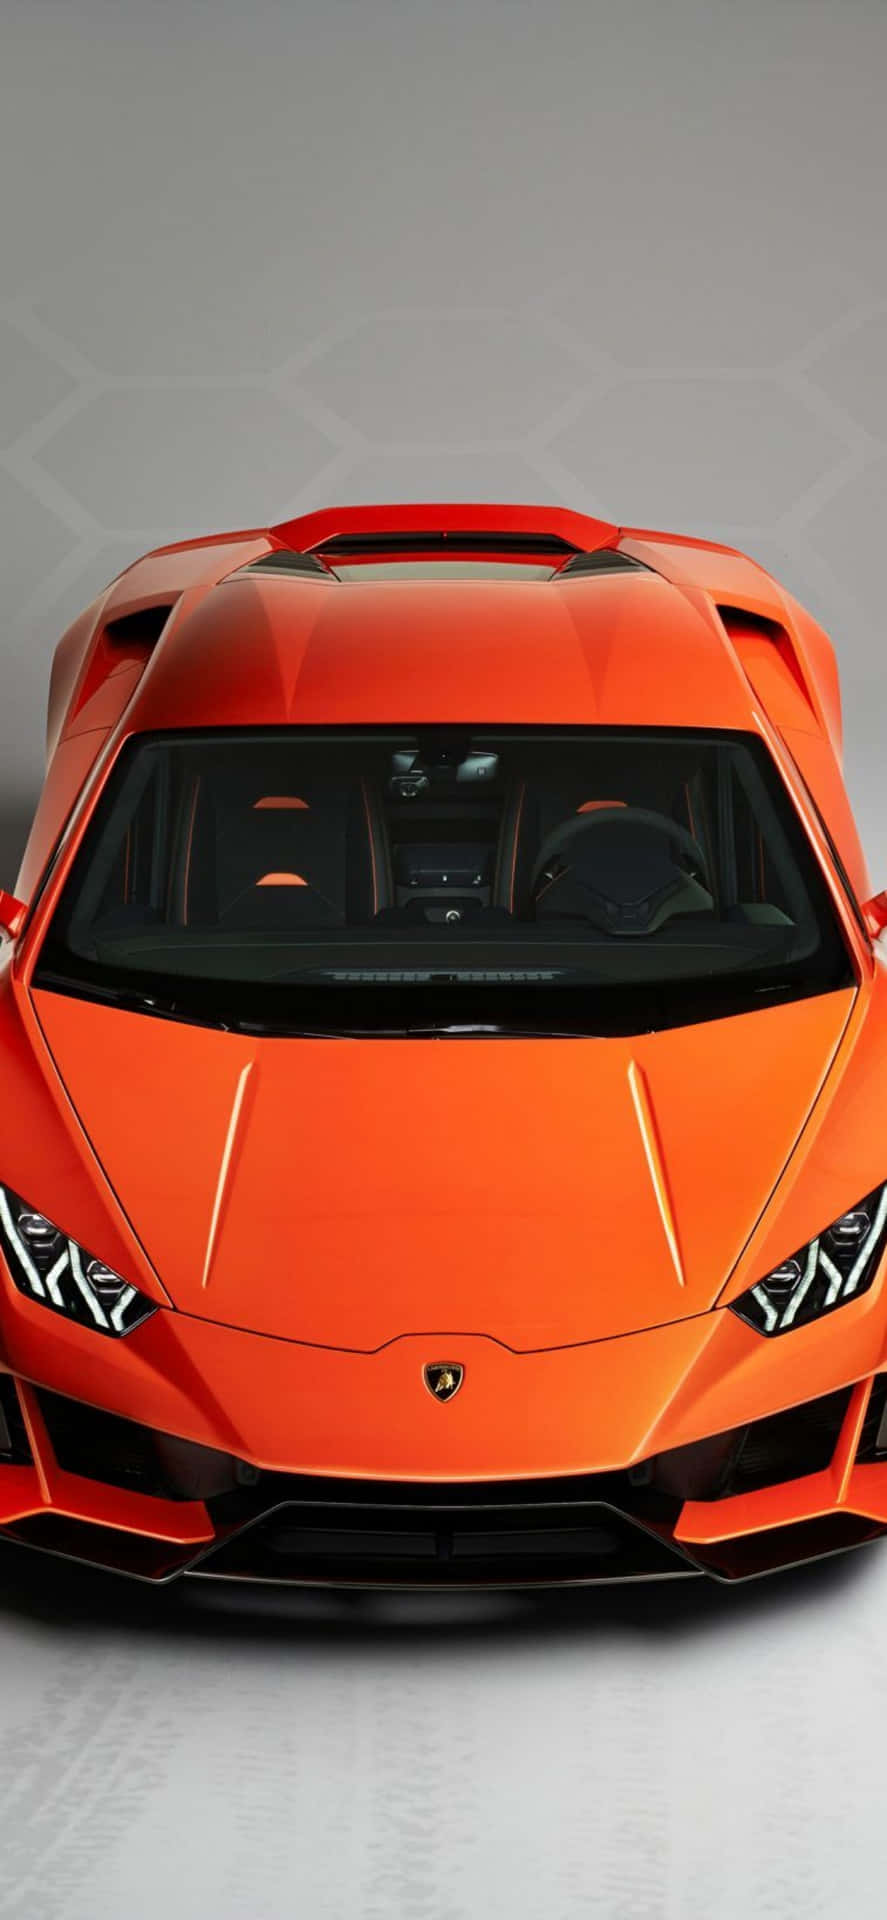 Lasciatistupire Dalla Potenza Dell'iphone X Motorizzato Lamborghini!